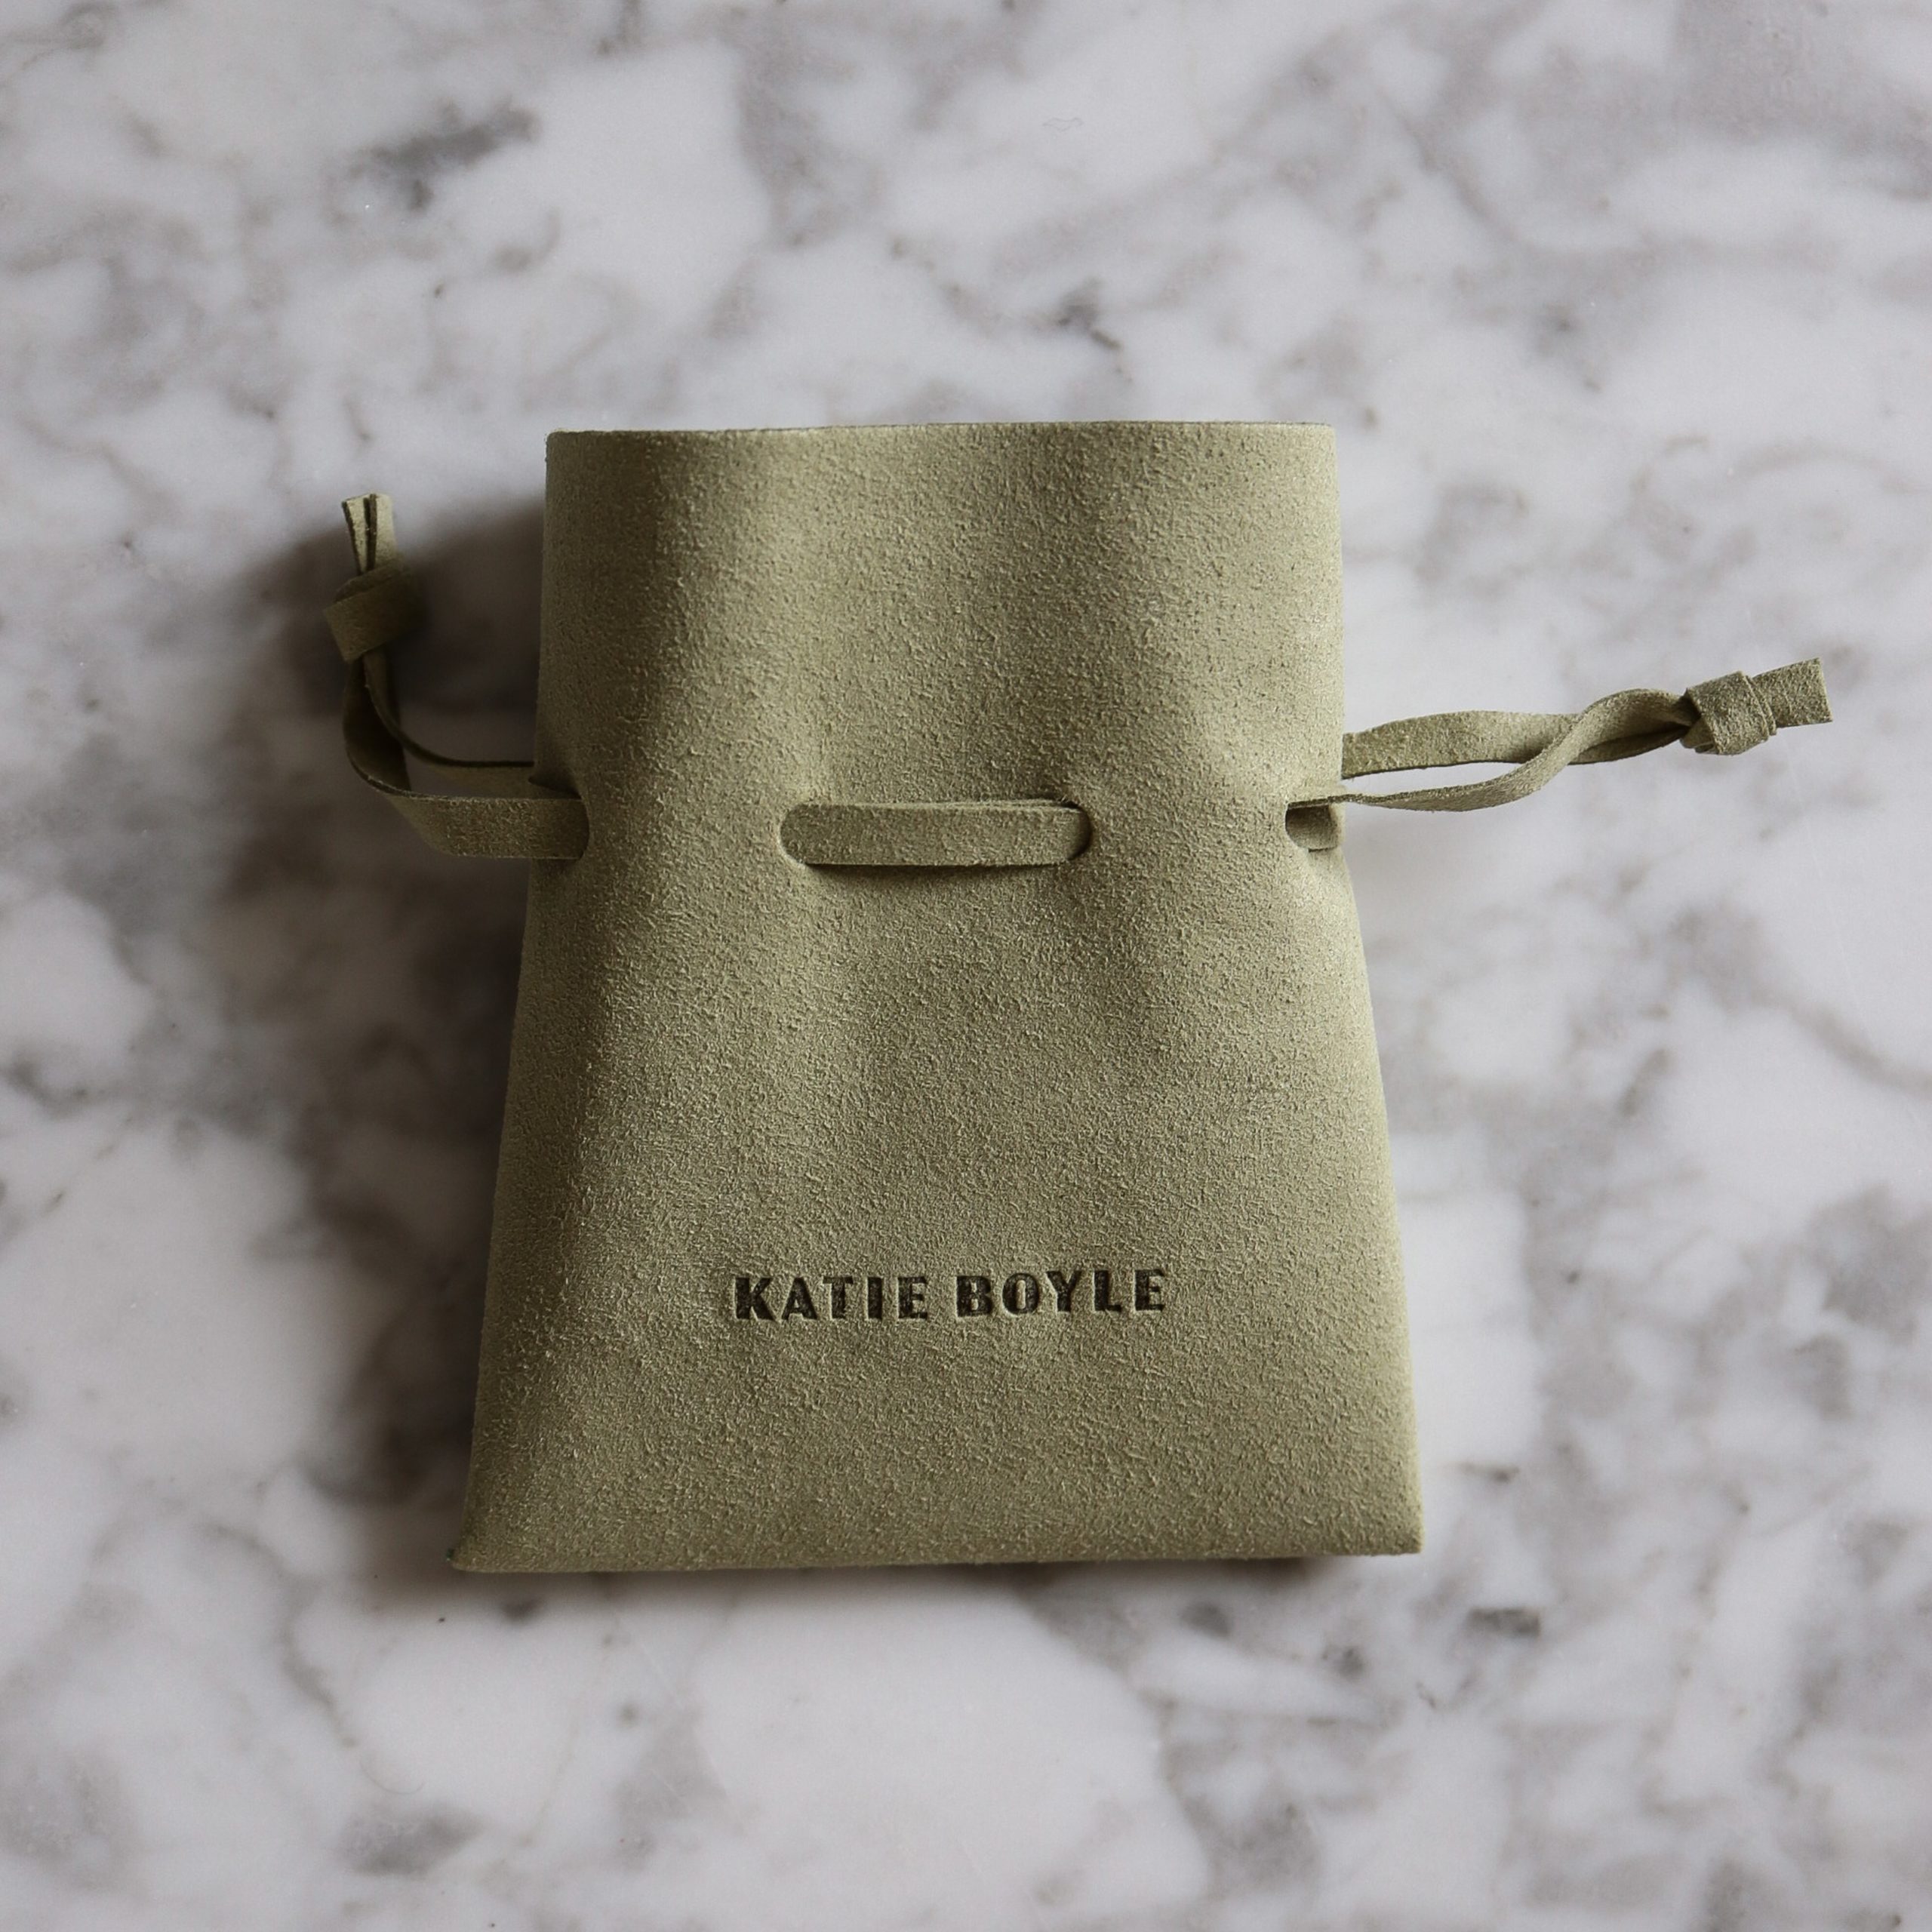 katie boyle signature pouch